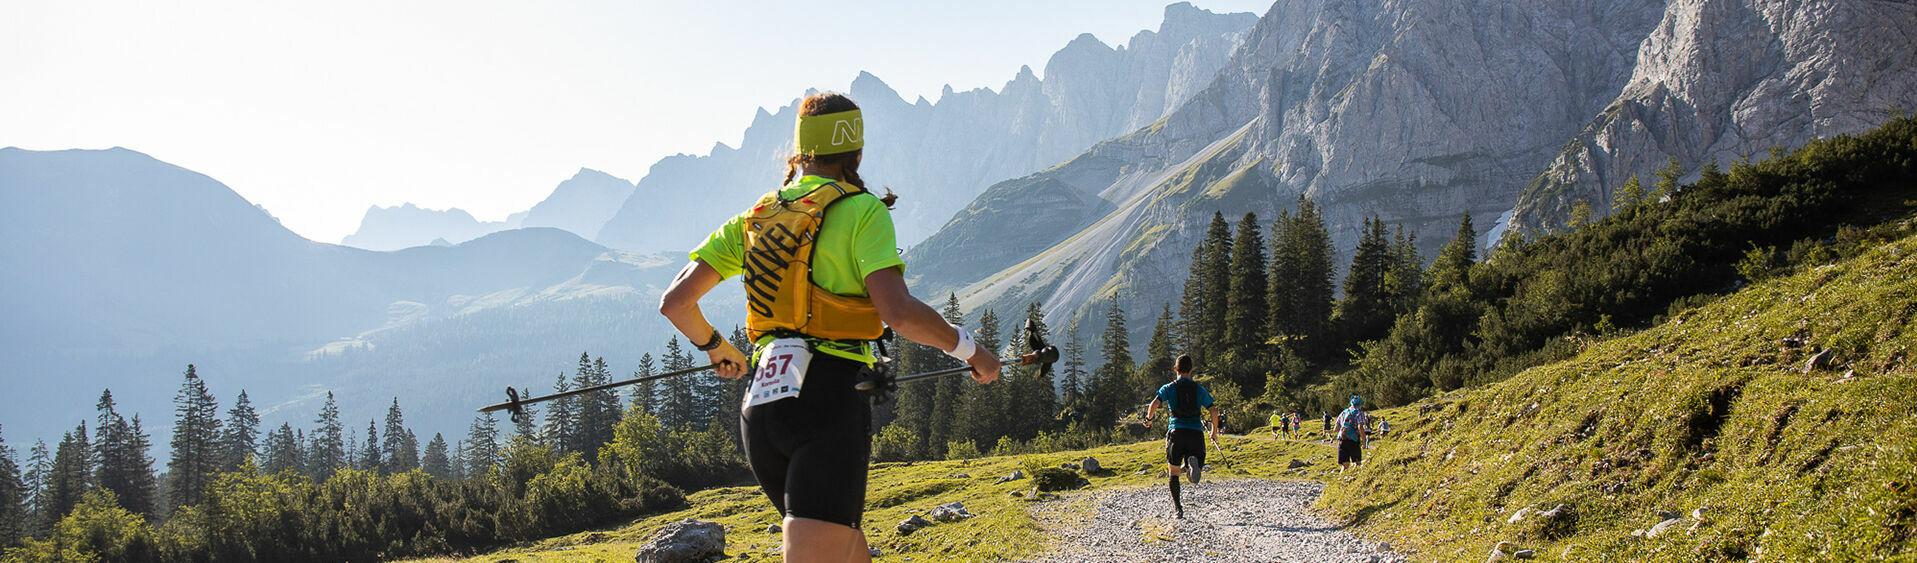 Ein paar Läufer des Karwendelmarschs laufen neben einer schönen Kulisse aus großen Bergen, grünen Wiesen und blauem Himmel.